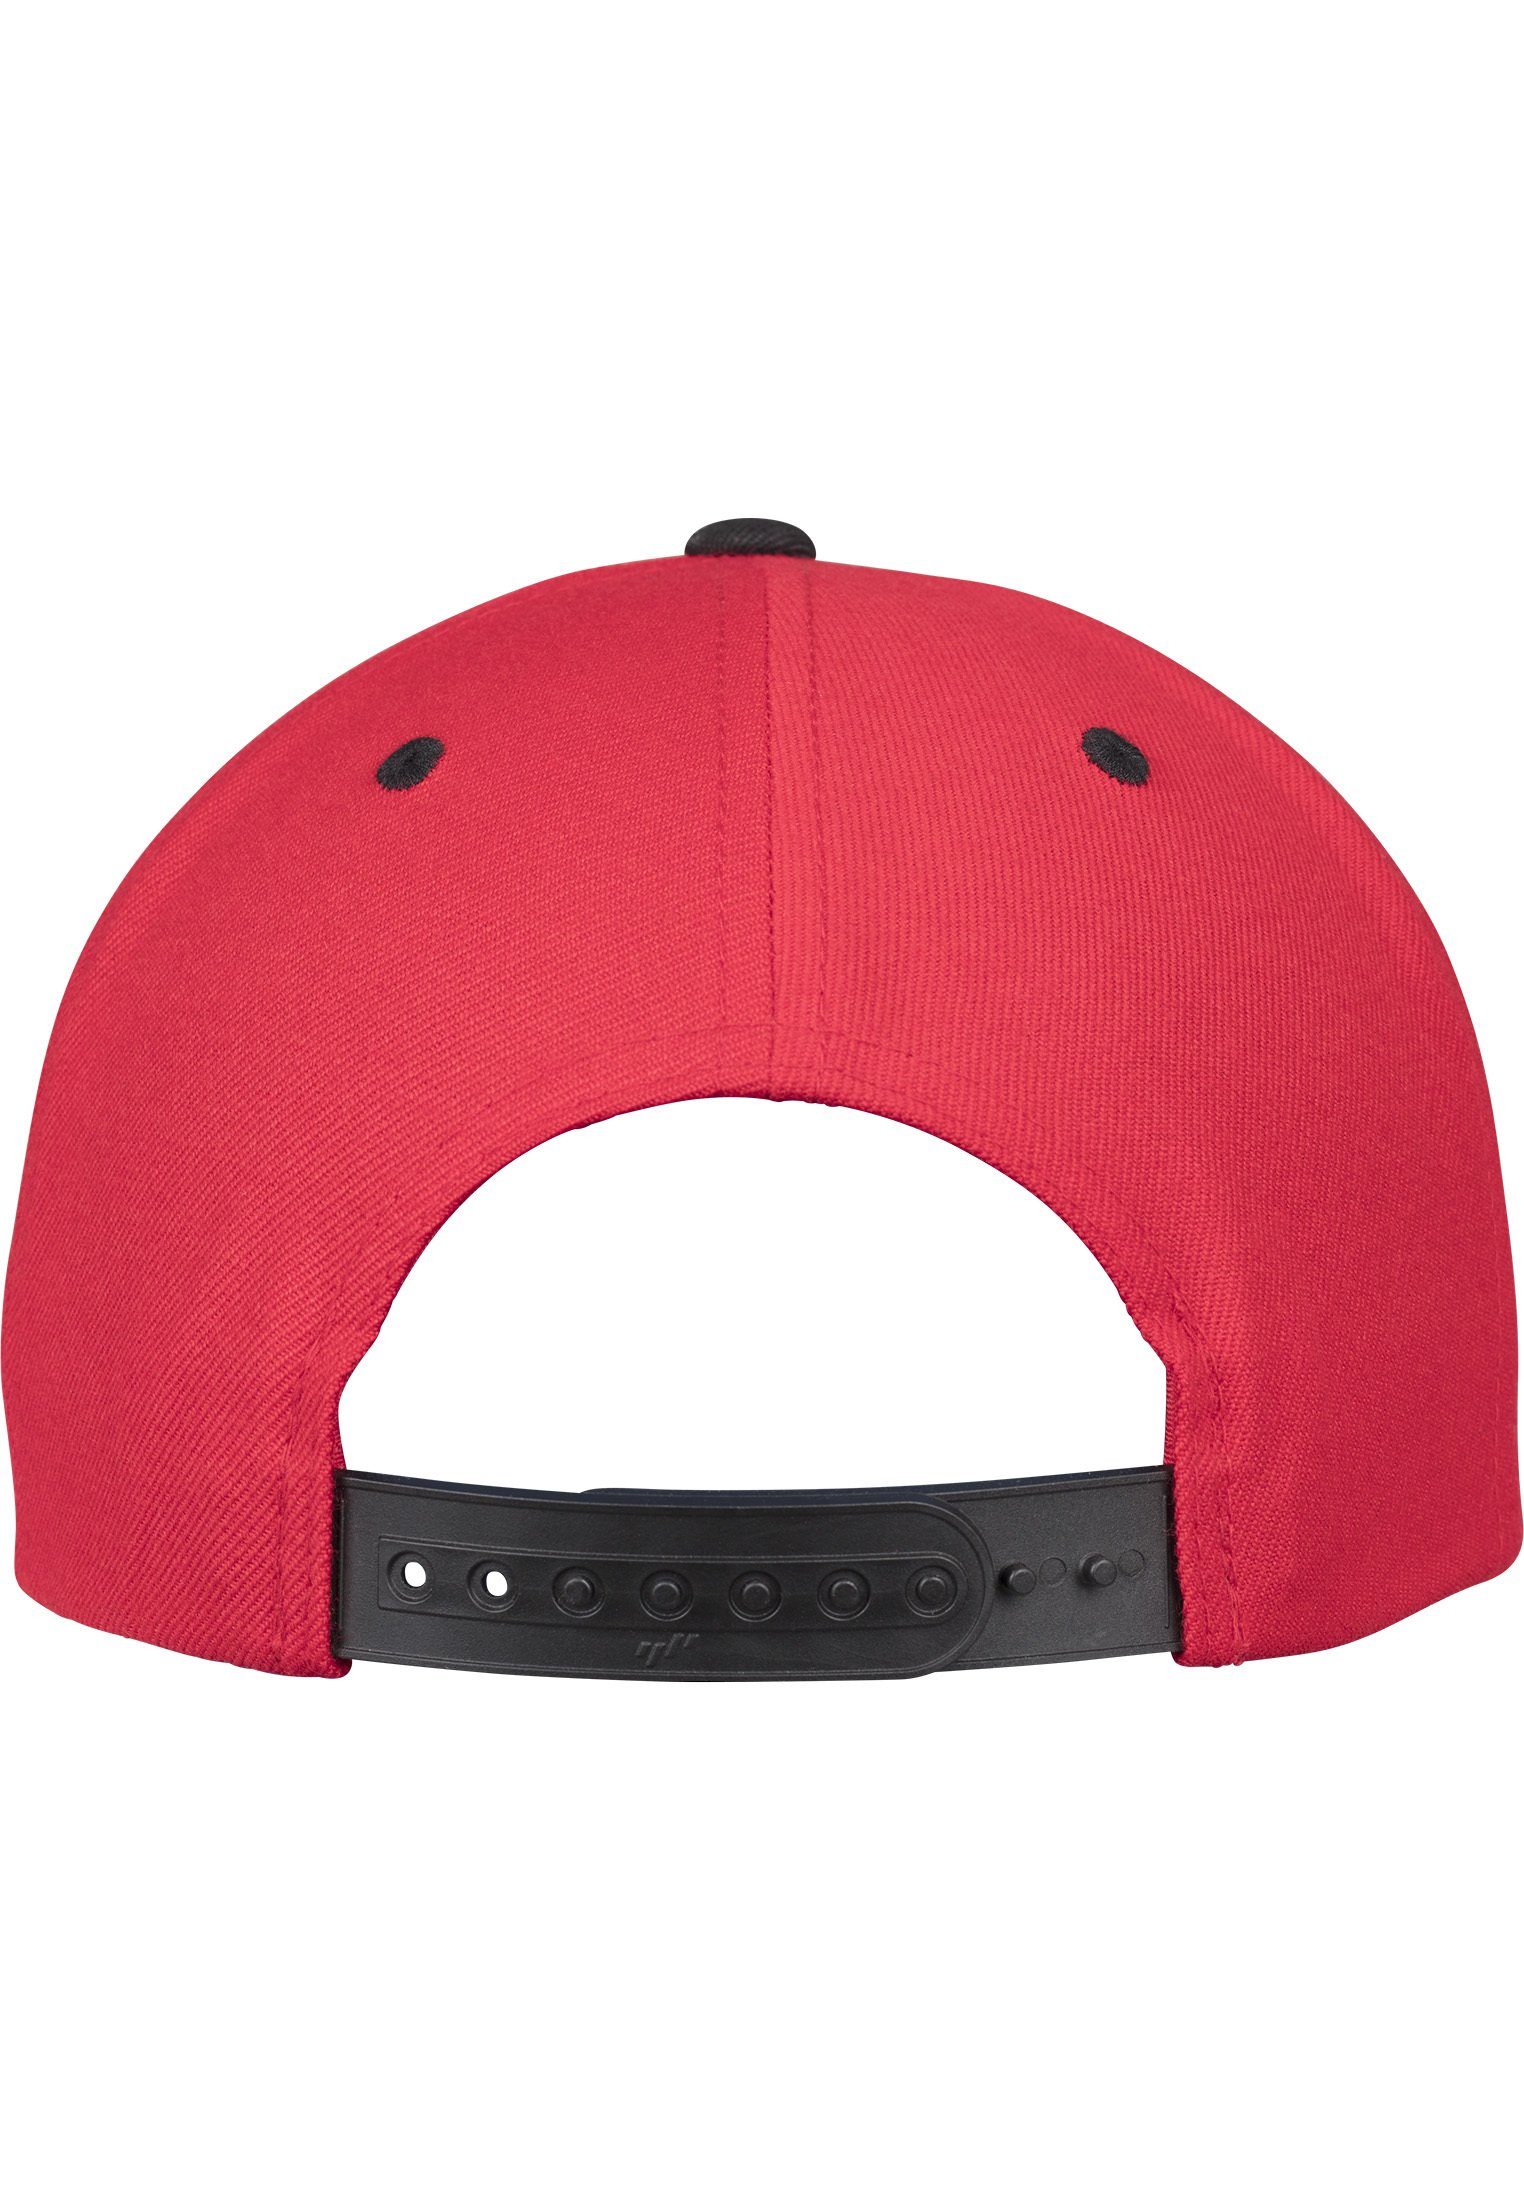 Flexfit Flex Snapback red/black 2-Tone Cap Snapback Classic